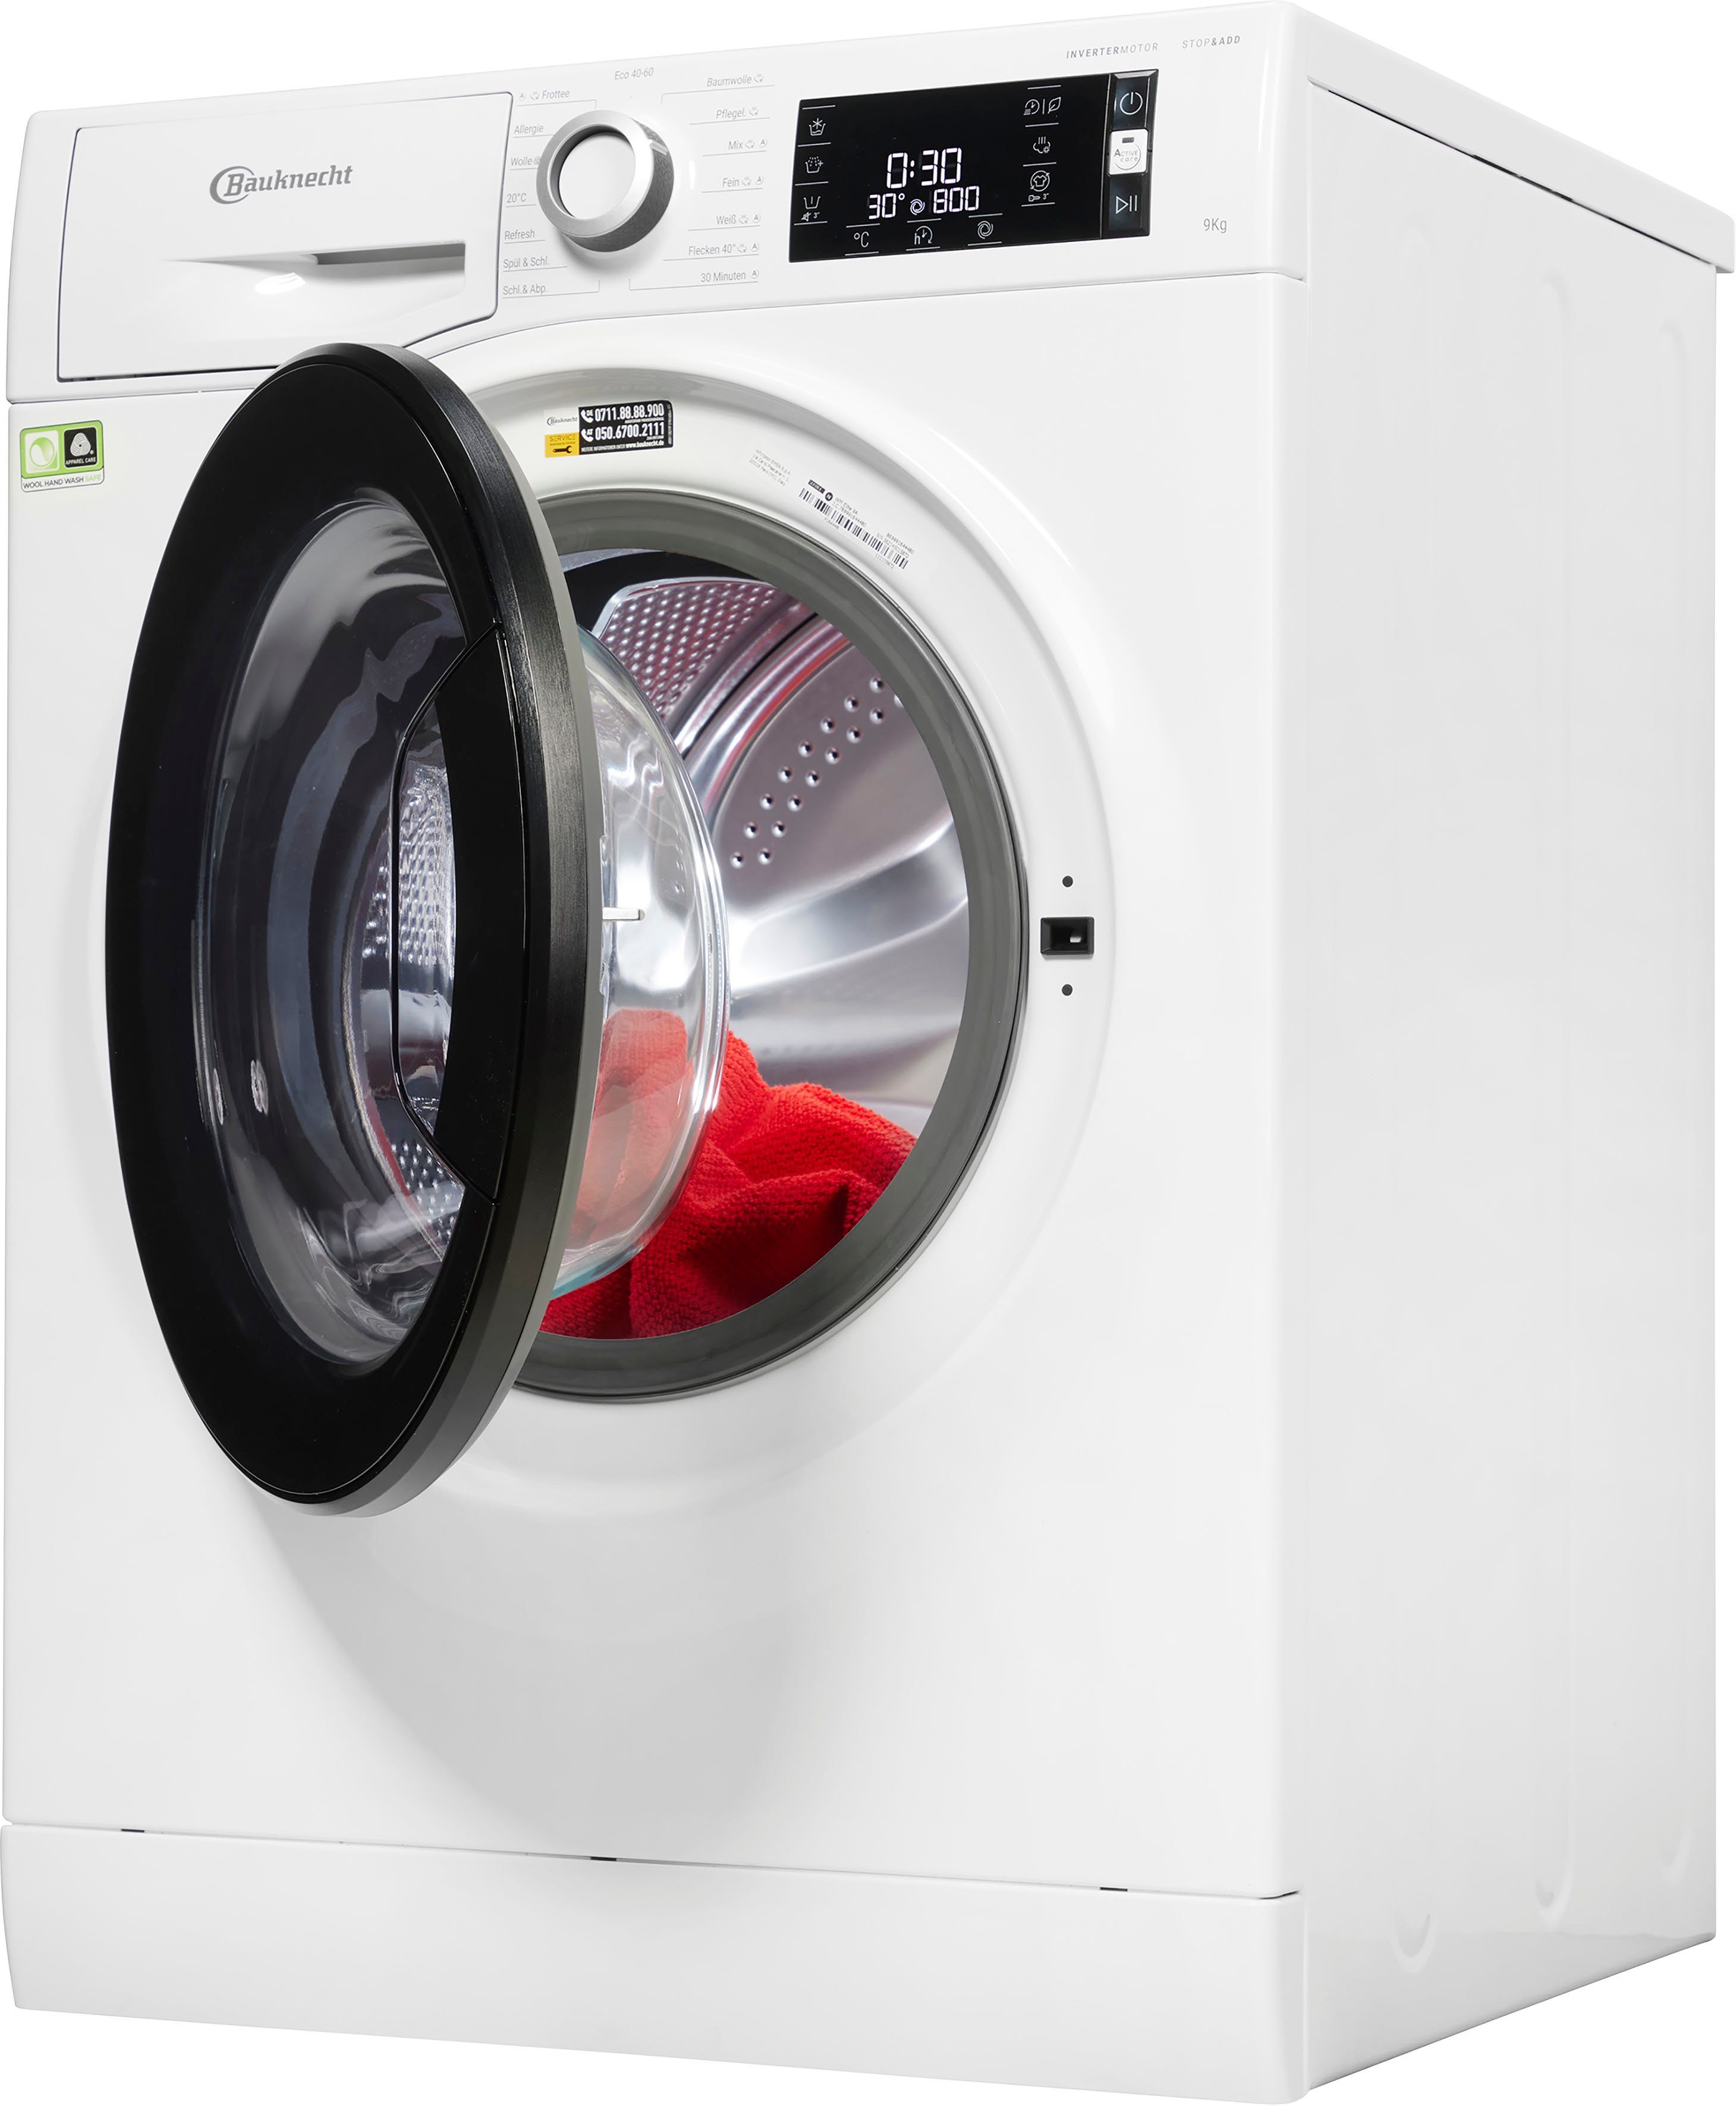 BAUKNECHT Waschmaschine WM Elite 9A, 9 kg, 1400 U/min